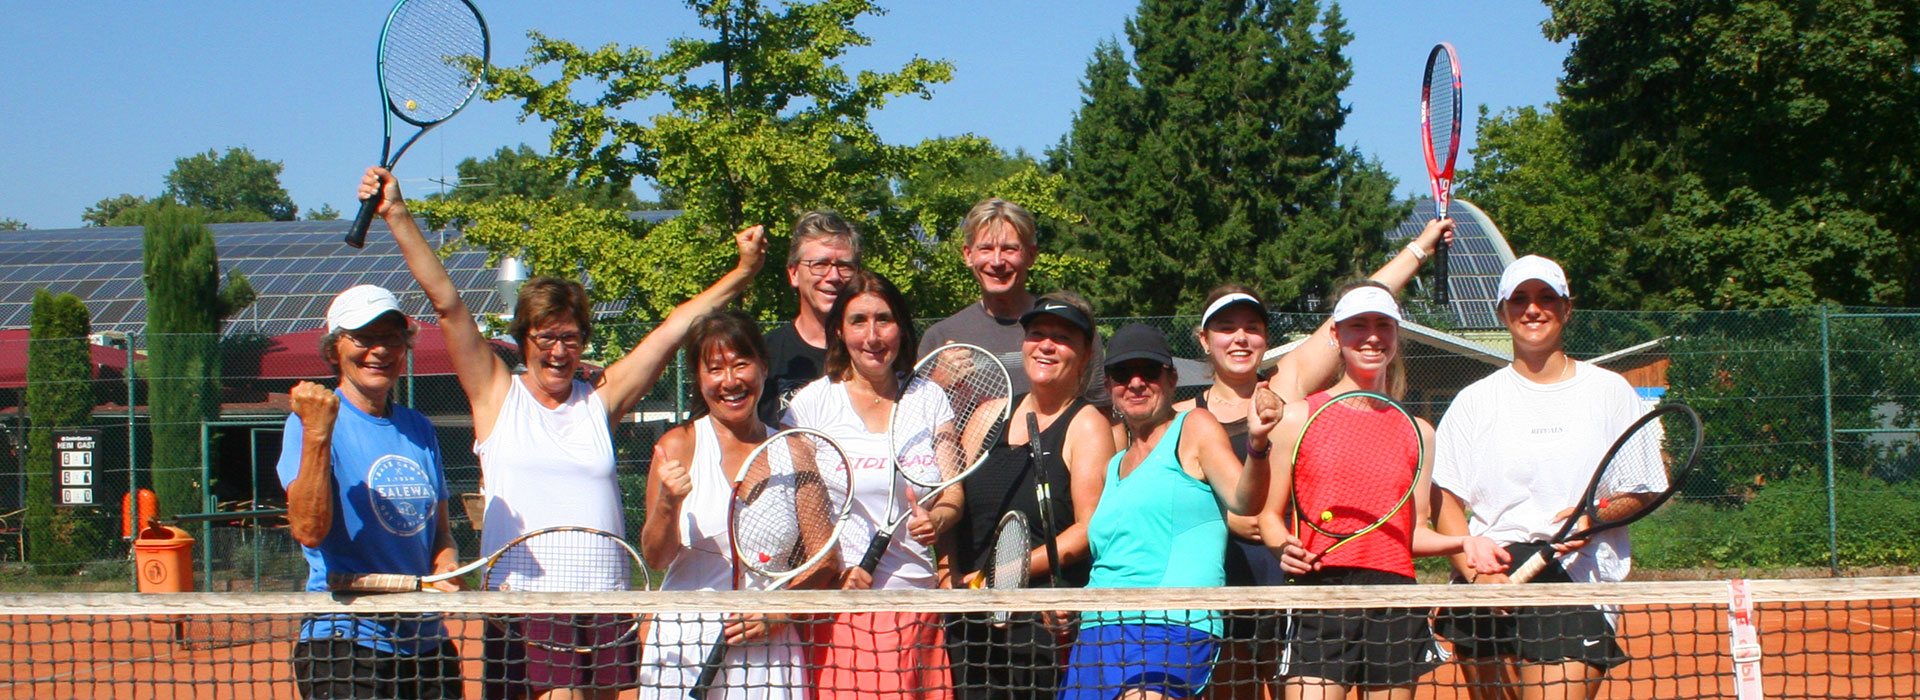 Tennis-Club-Blau-Weiss-Bornheim-Manschaften